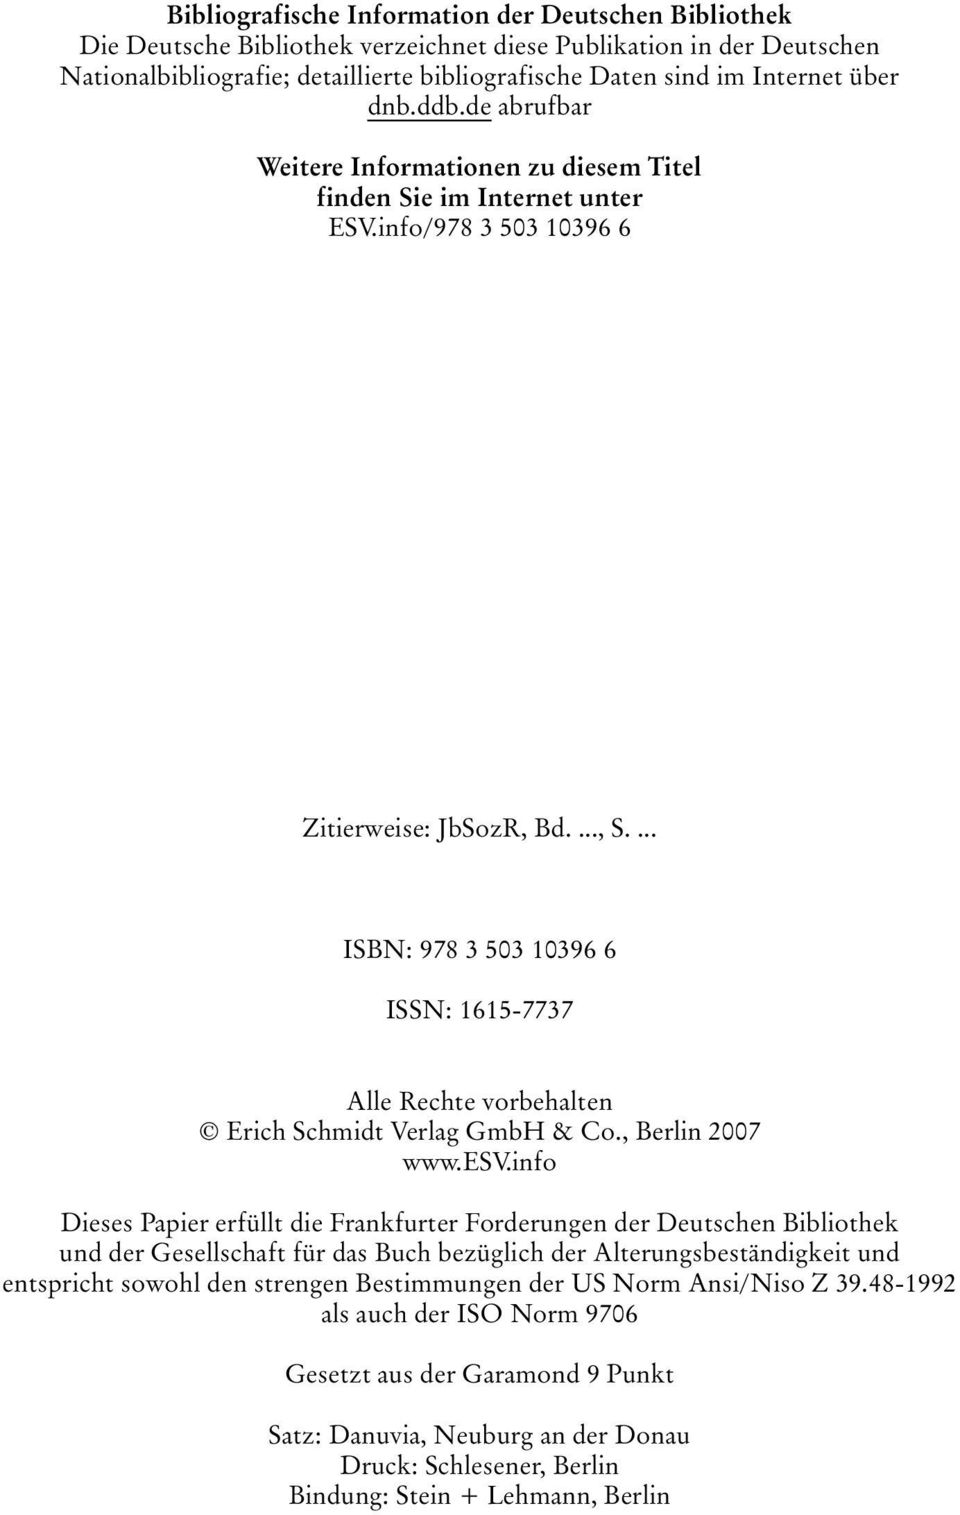 ... ISBN: 978 3 503 10396 6 ISSN: 1615-7737 Alle Rechte vorbehalten Erich Schmidt Verlag GmbH & Co., Berlin 2007 www.esv.